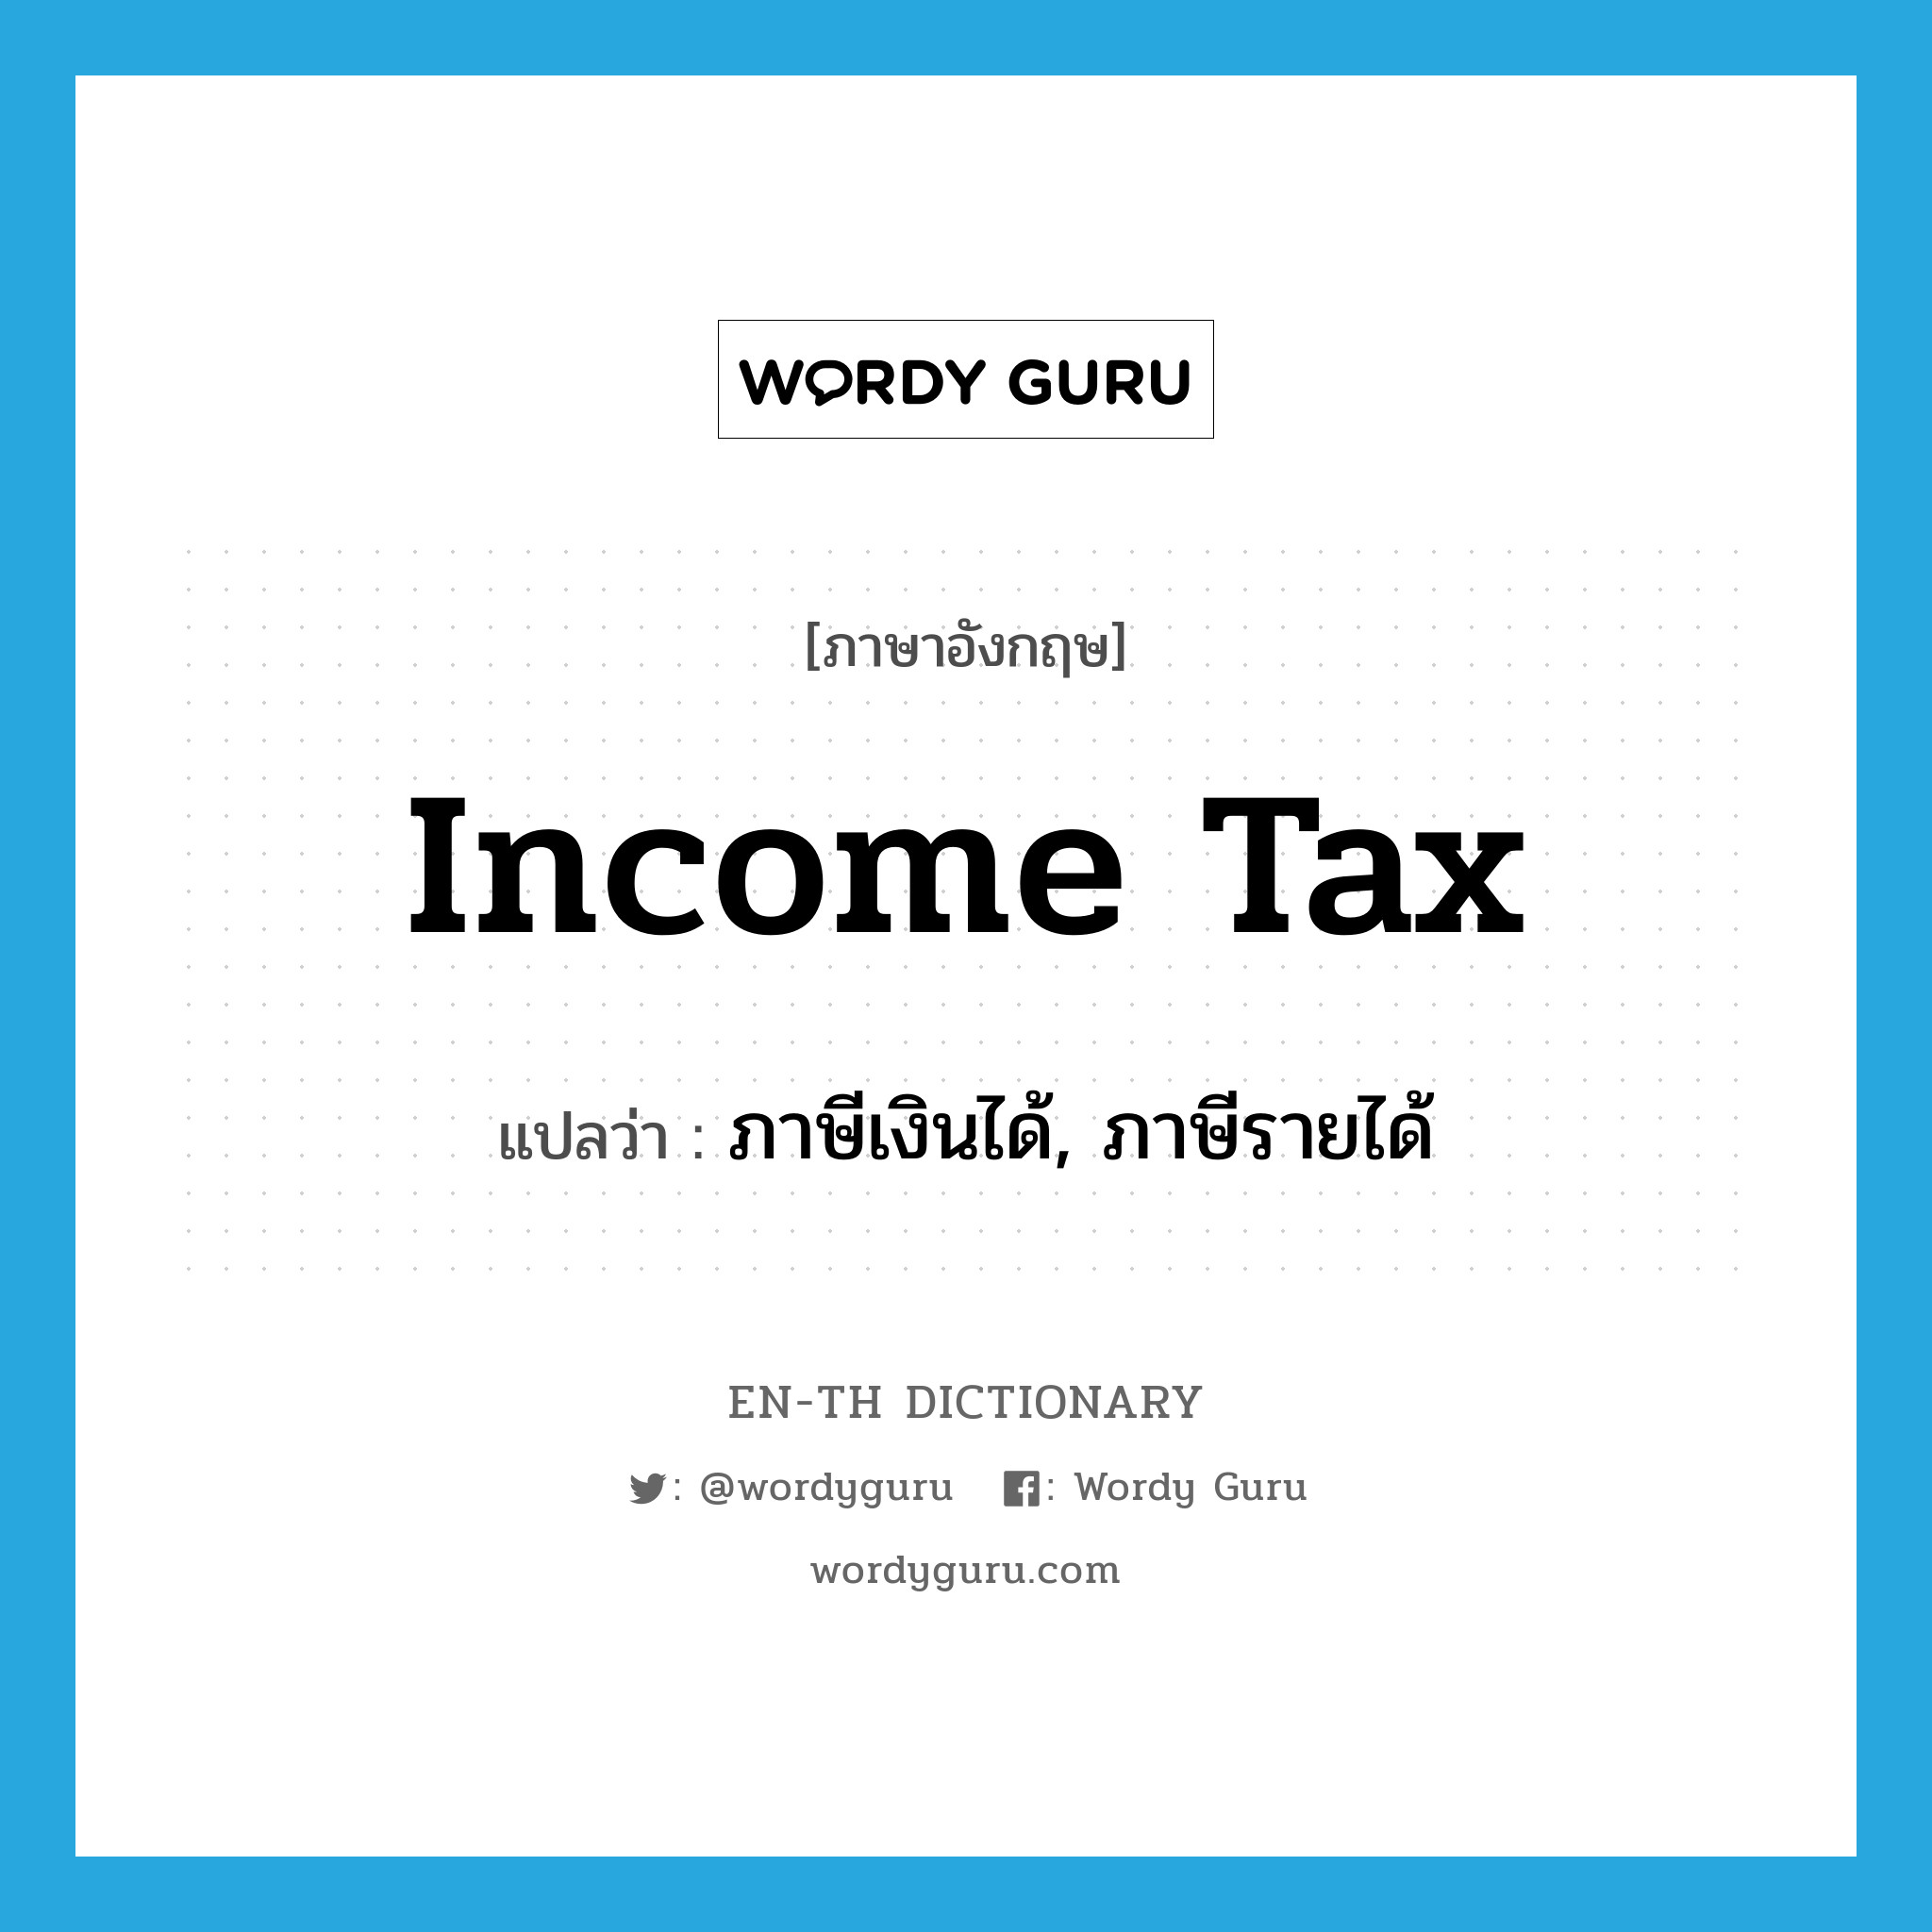 ภาษีเงินได้, ภาษีรายได้ ภาษาอังกฤษ?, คำศัพท์ภาษาอังกฤษ ภาษีเงินได้, ภาษีรายได้ แปลว่า income tax ประเภท N หมวด N